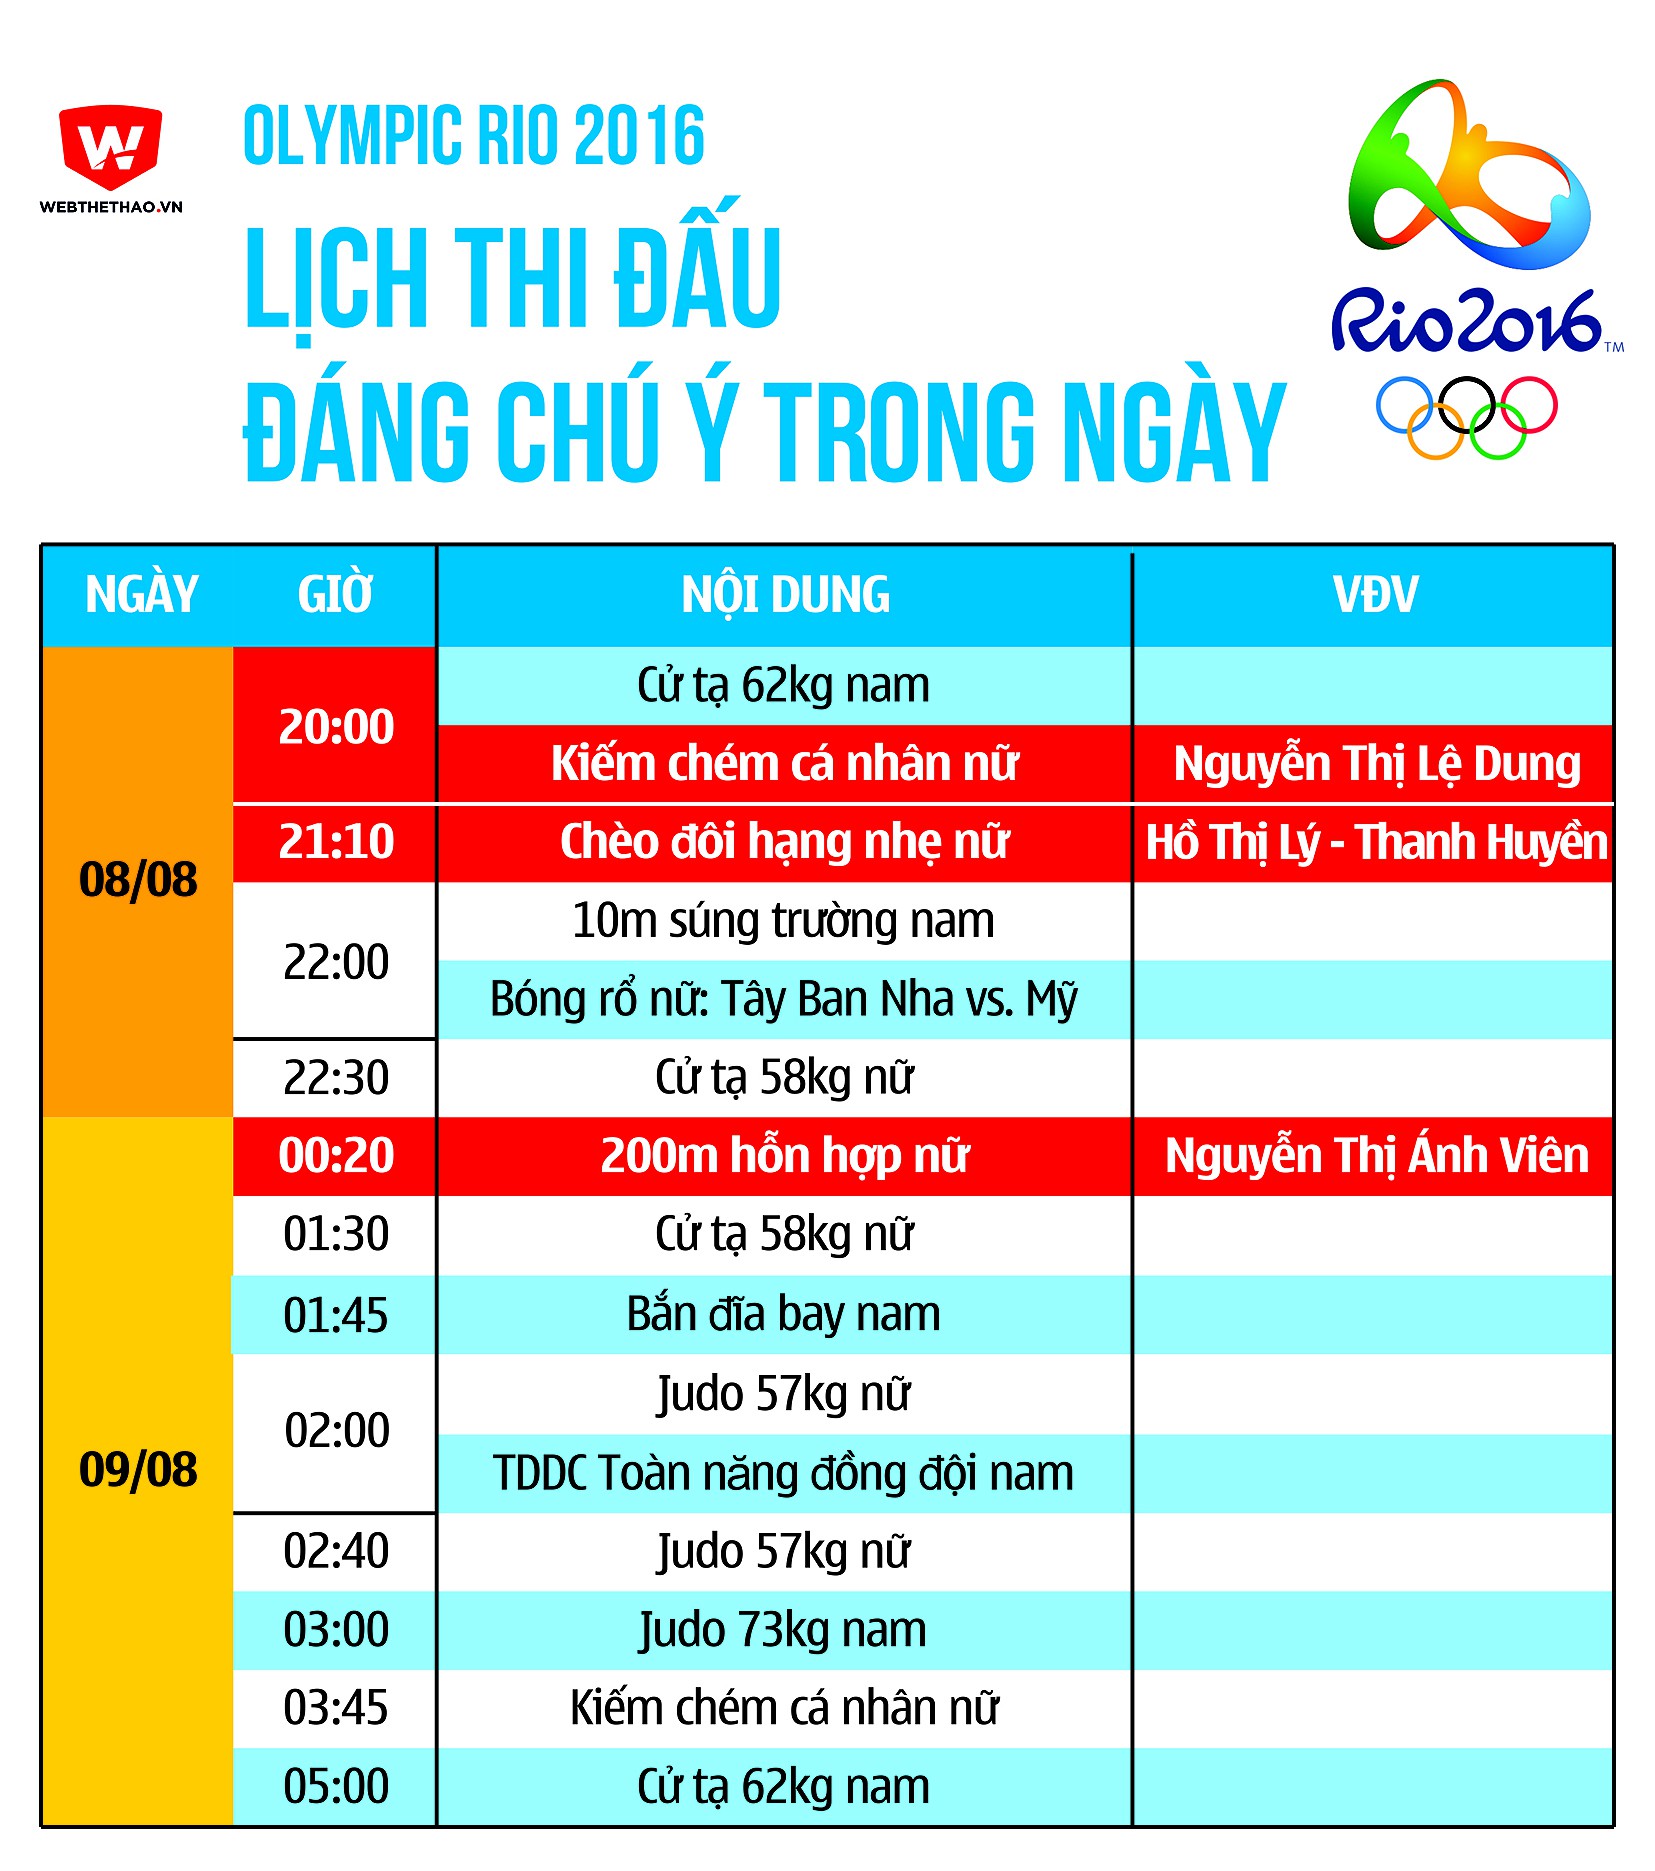 Olympic 2016: Lịch thi đấu từ ngày 08/08 đến rạng sáng ngày 09/08.	